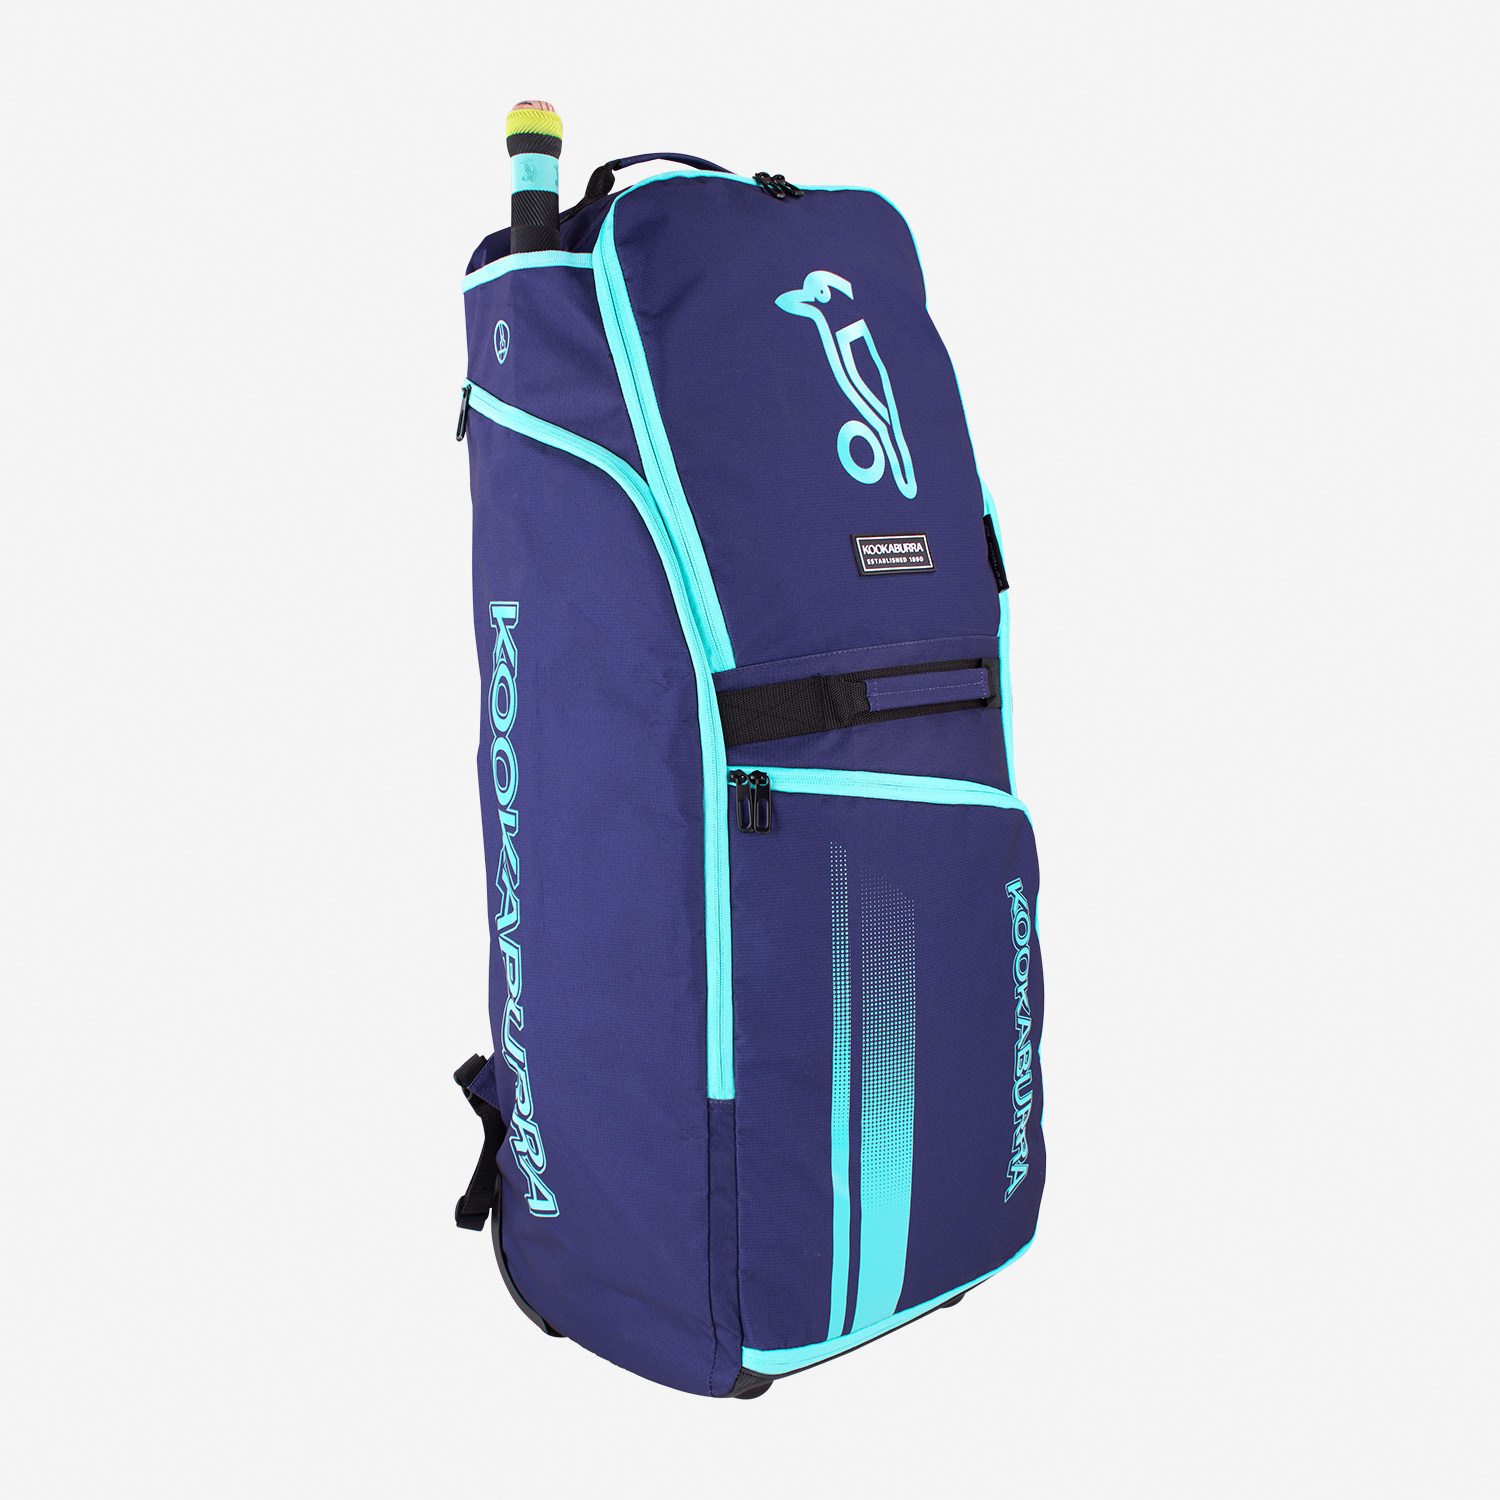 Kookaburra Wheelie Duffel Cricket Bag 